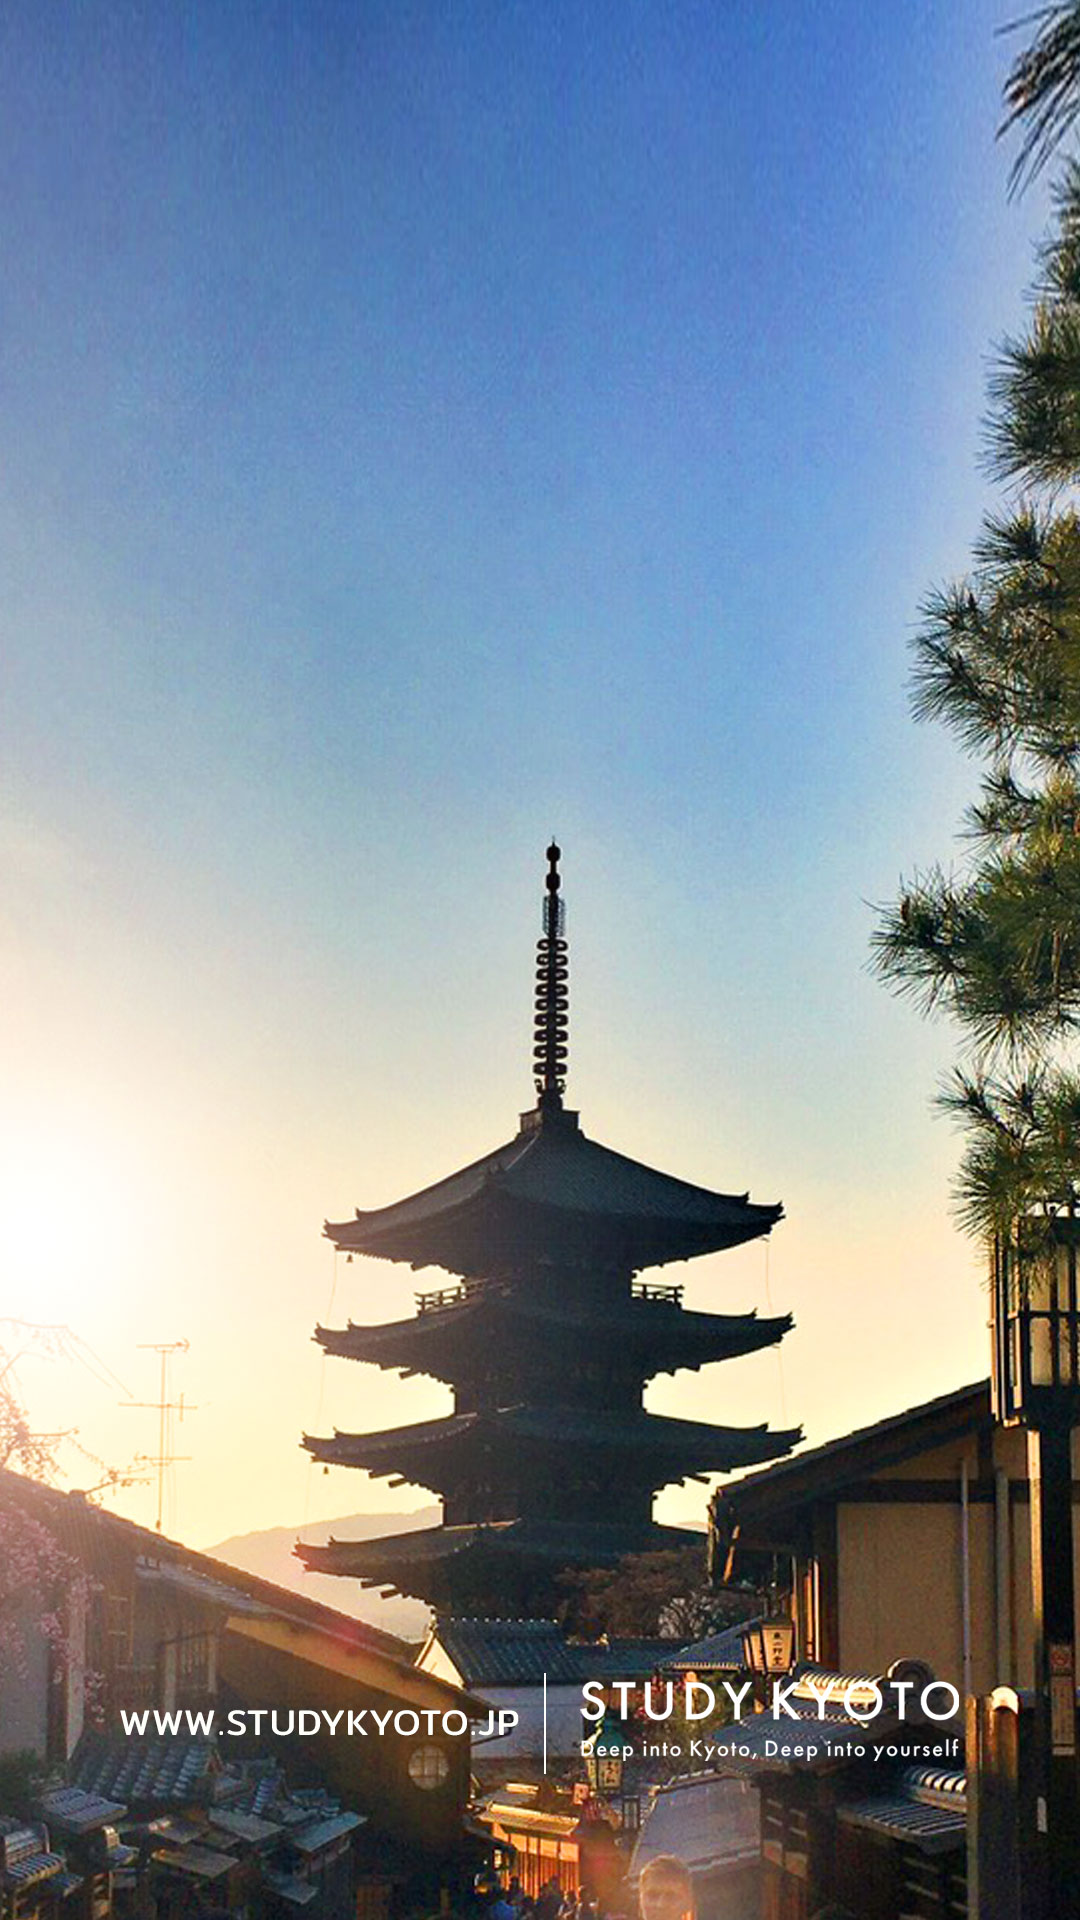 4 3更新 Study Kyoto的壁紙提供免費下載 京都留学資訊